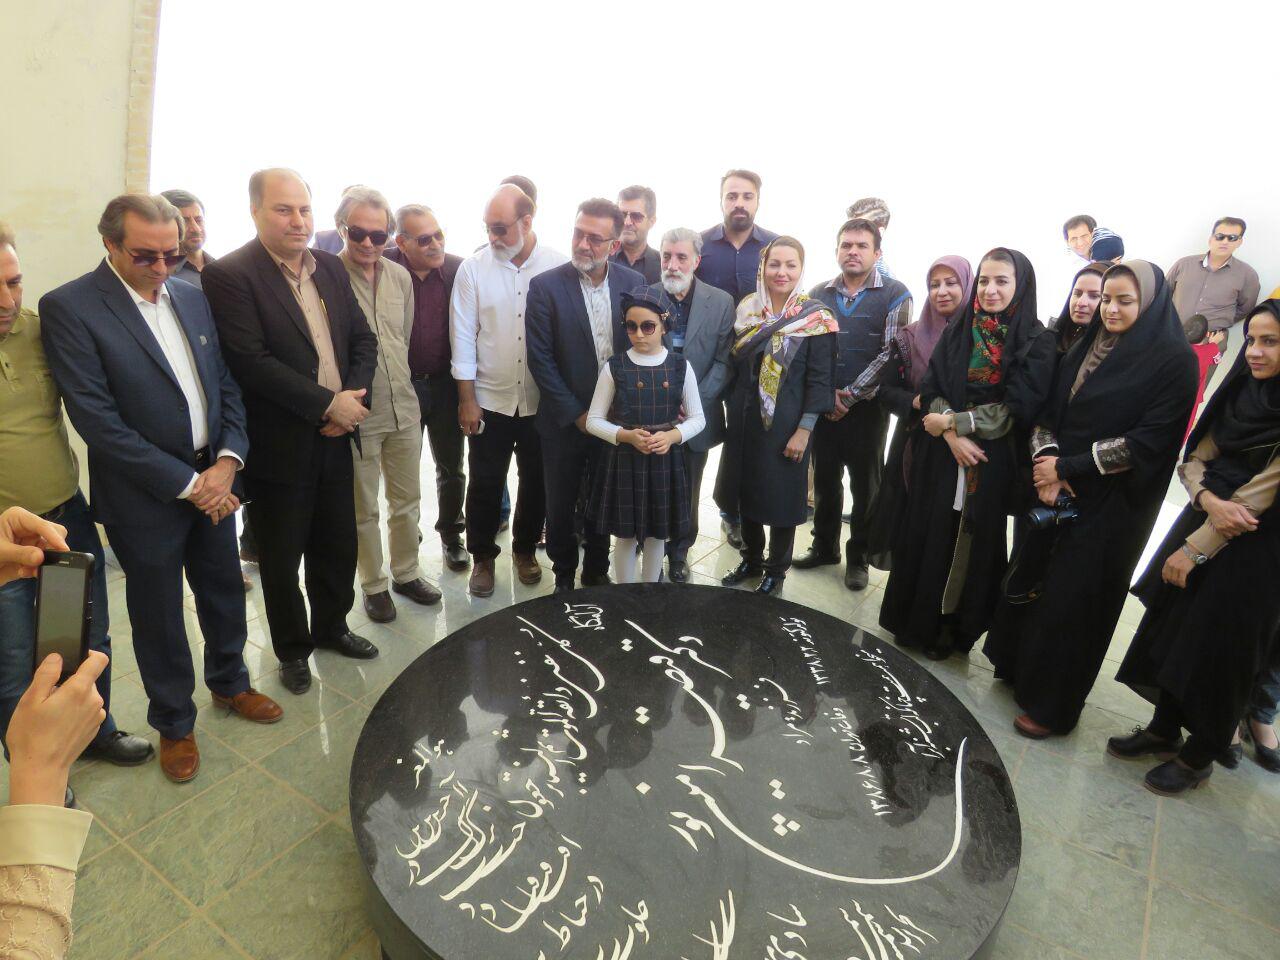 آرامگاه قیصرشعر ایران درگتوند میزبان دوستداران فرهنگ و ادب